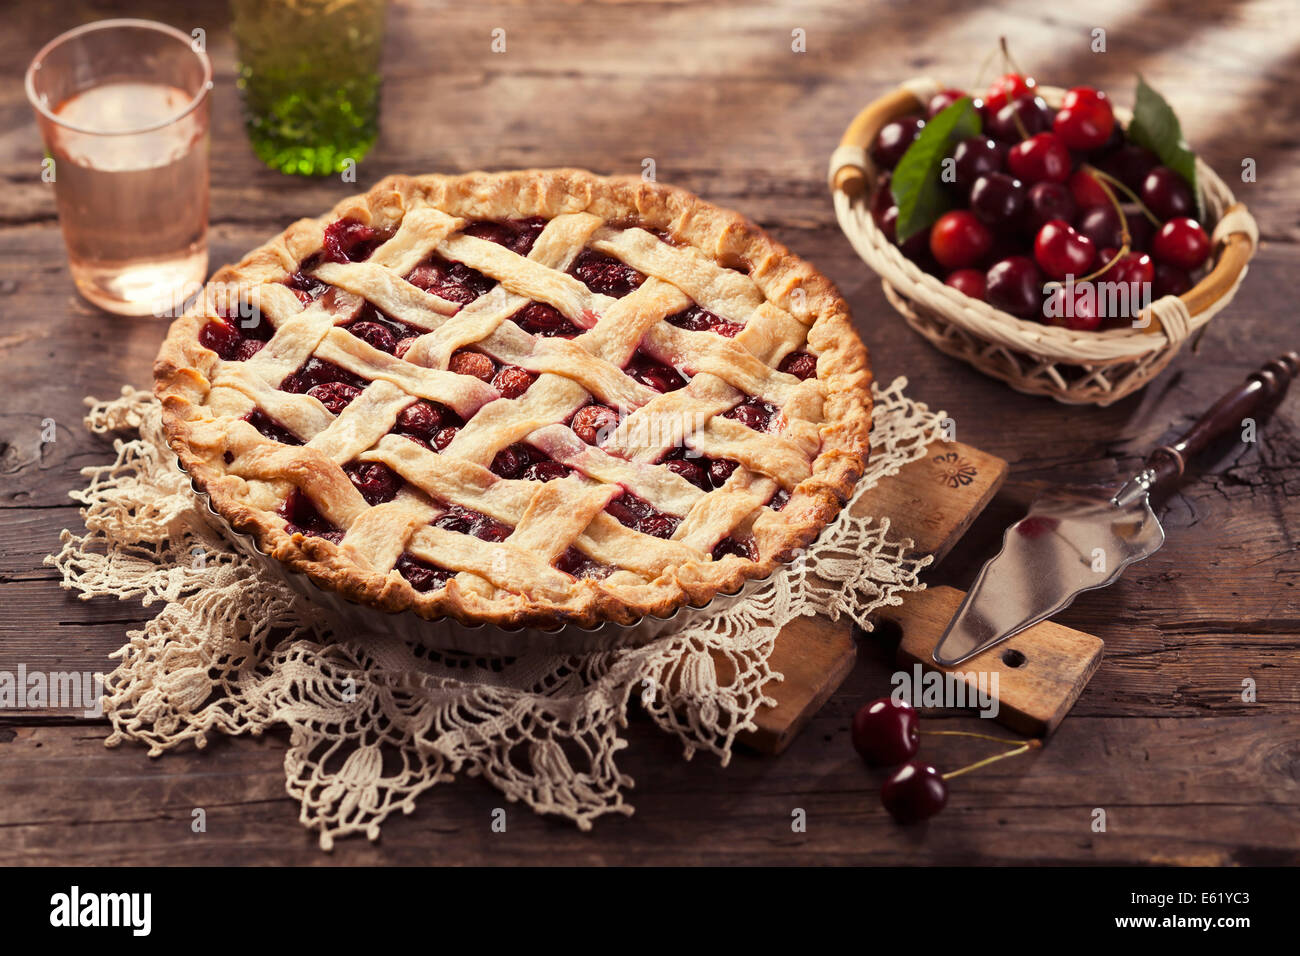 Cherry pie with lattice crust. Stock Photo